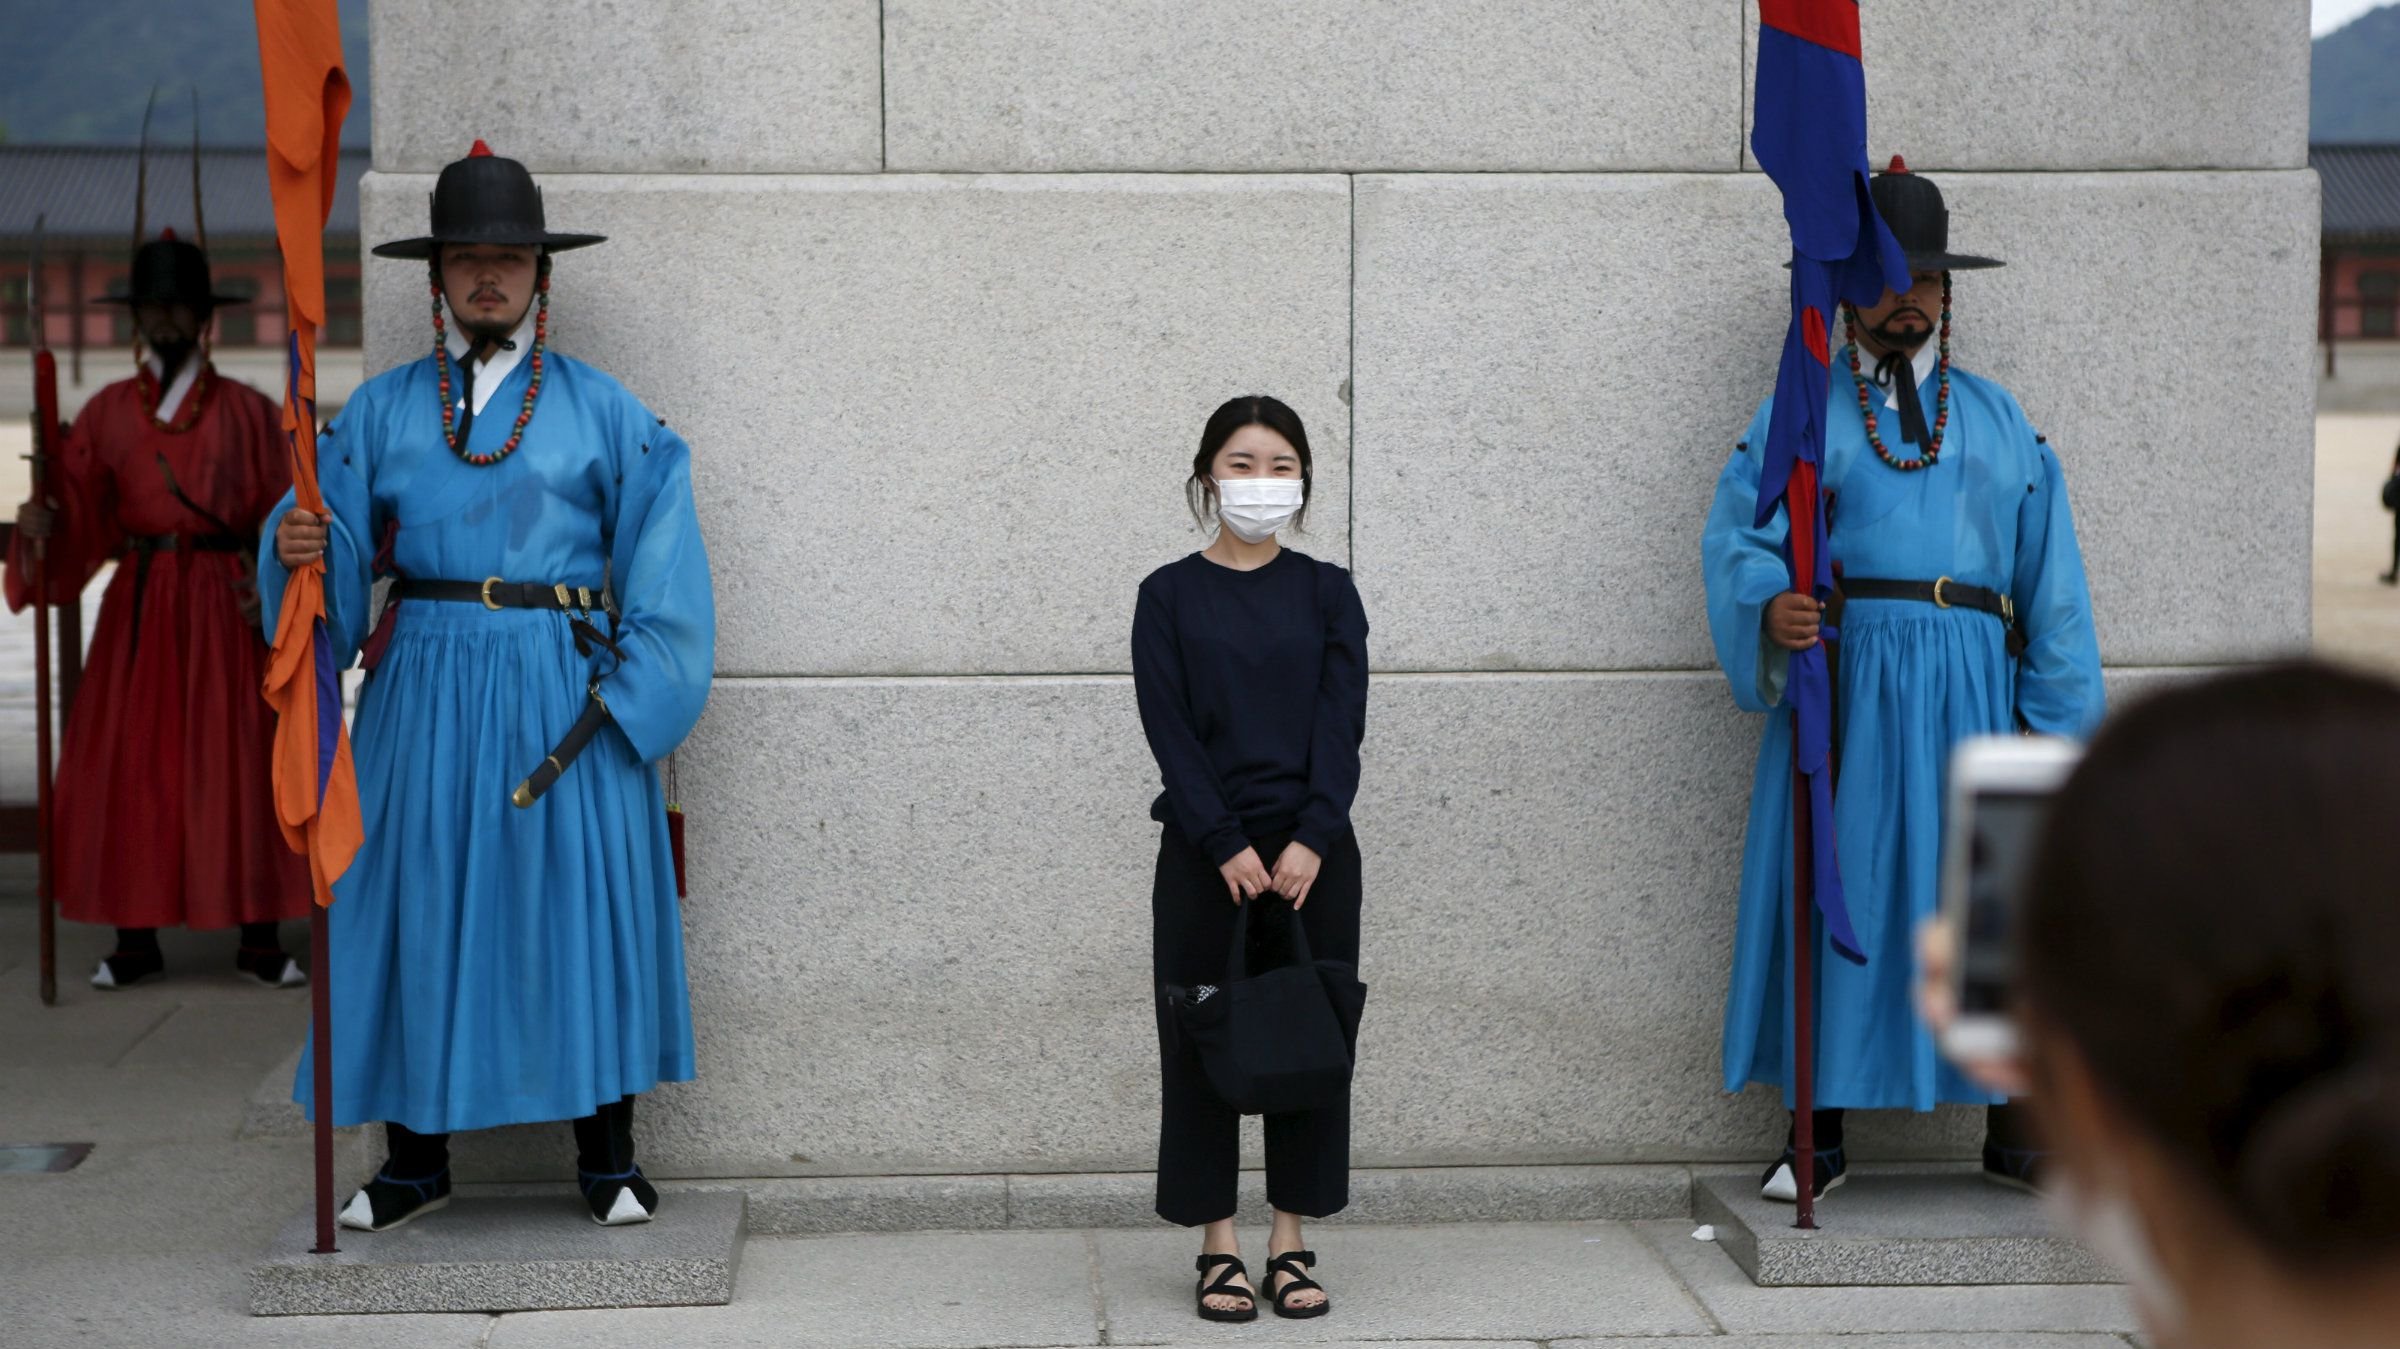 აღმოსავლეთ აზიას საშინელი, მომაკვდინებელი ვირუსი უტევს